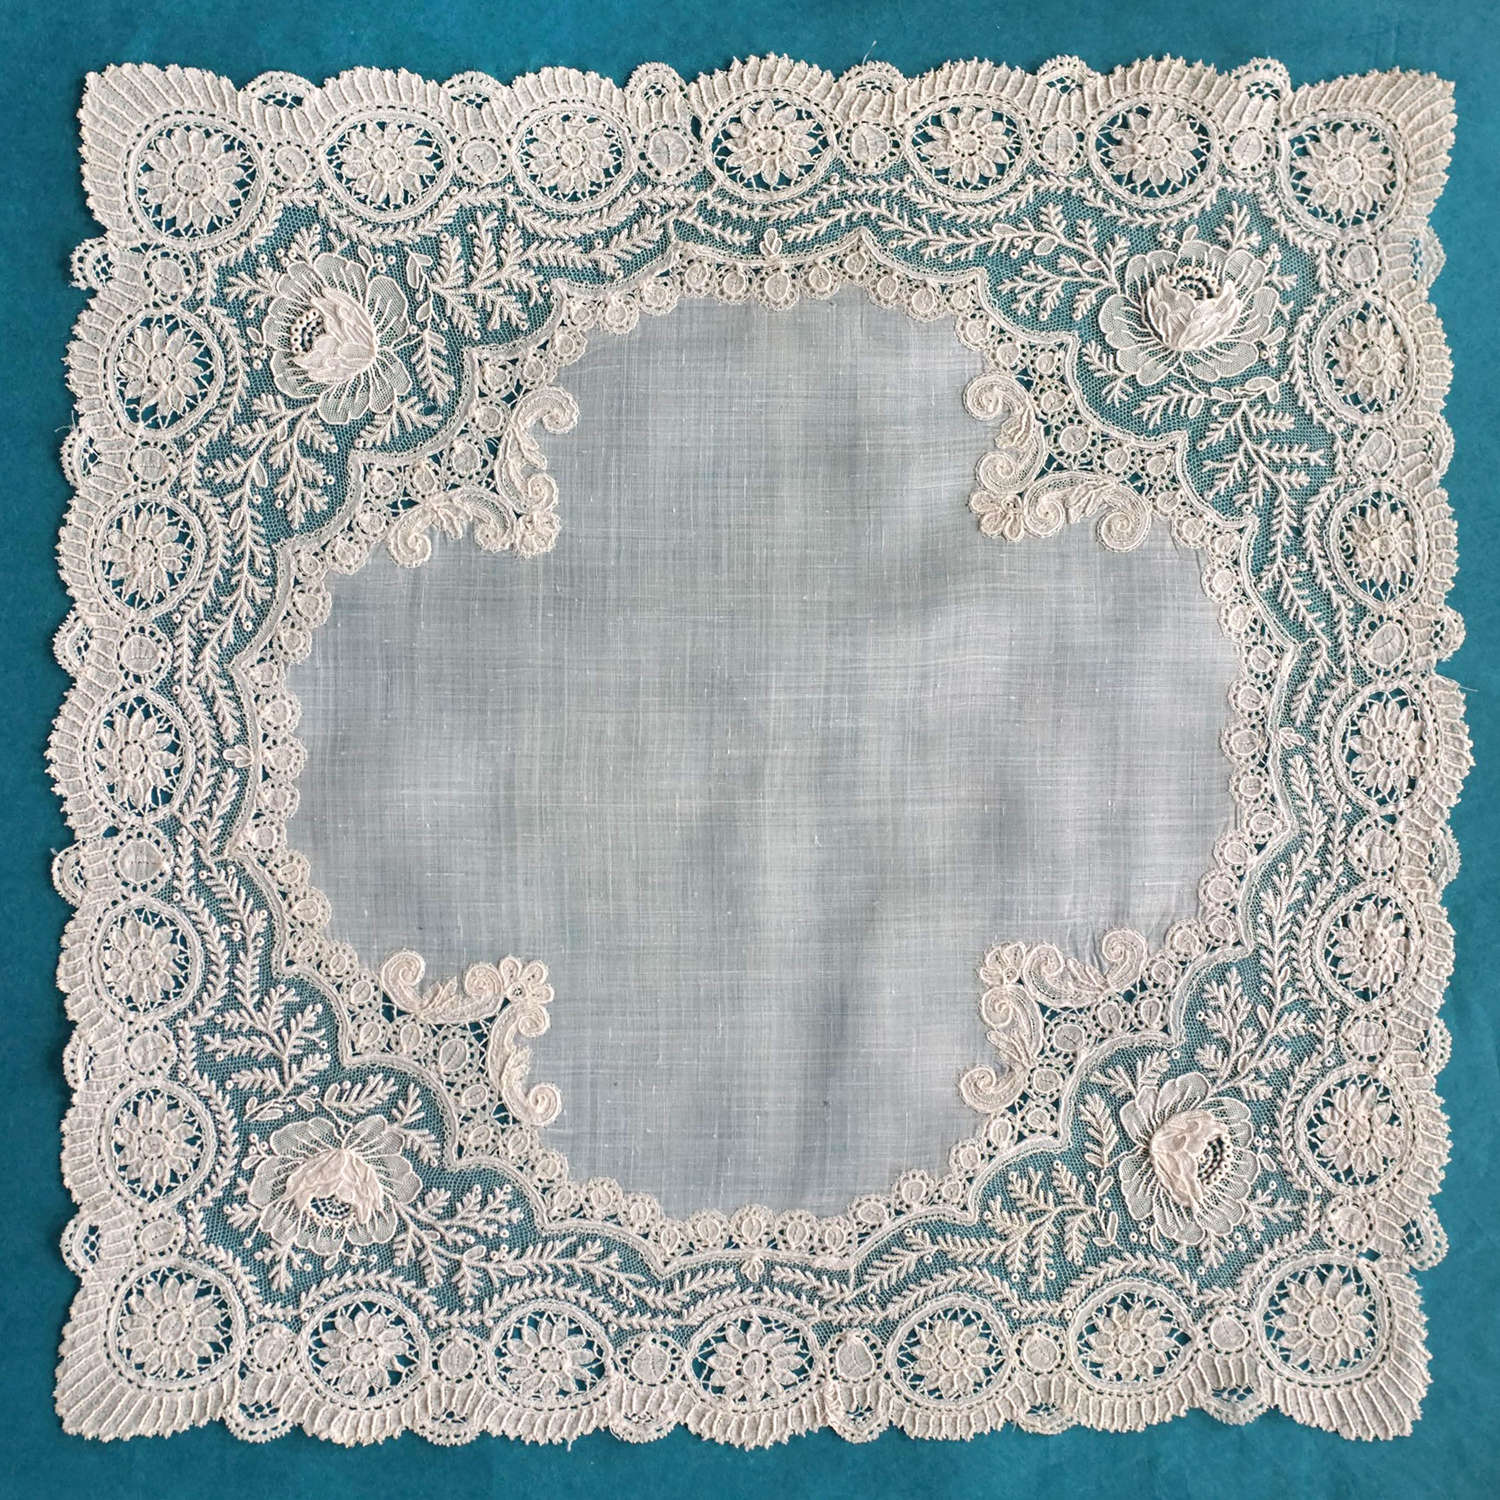 Antique Brussels Duchesse and Point de Gaze Lace Handkerchief